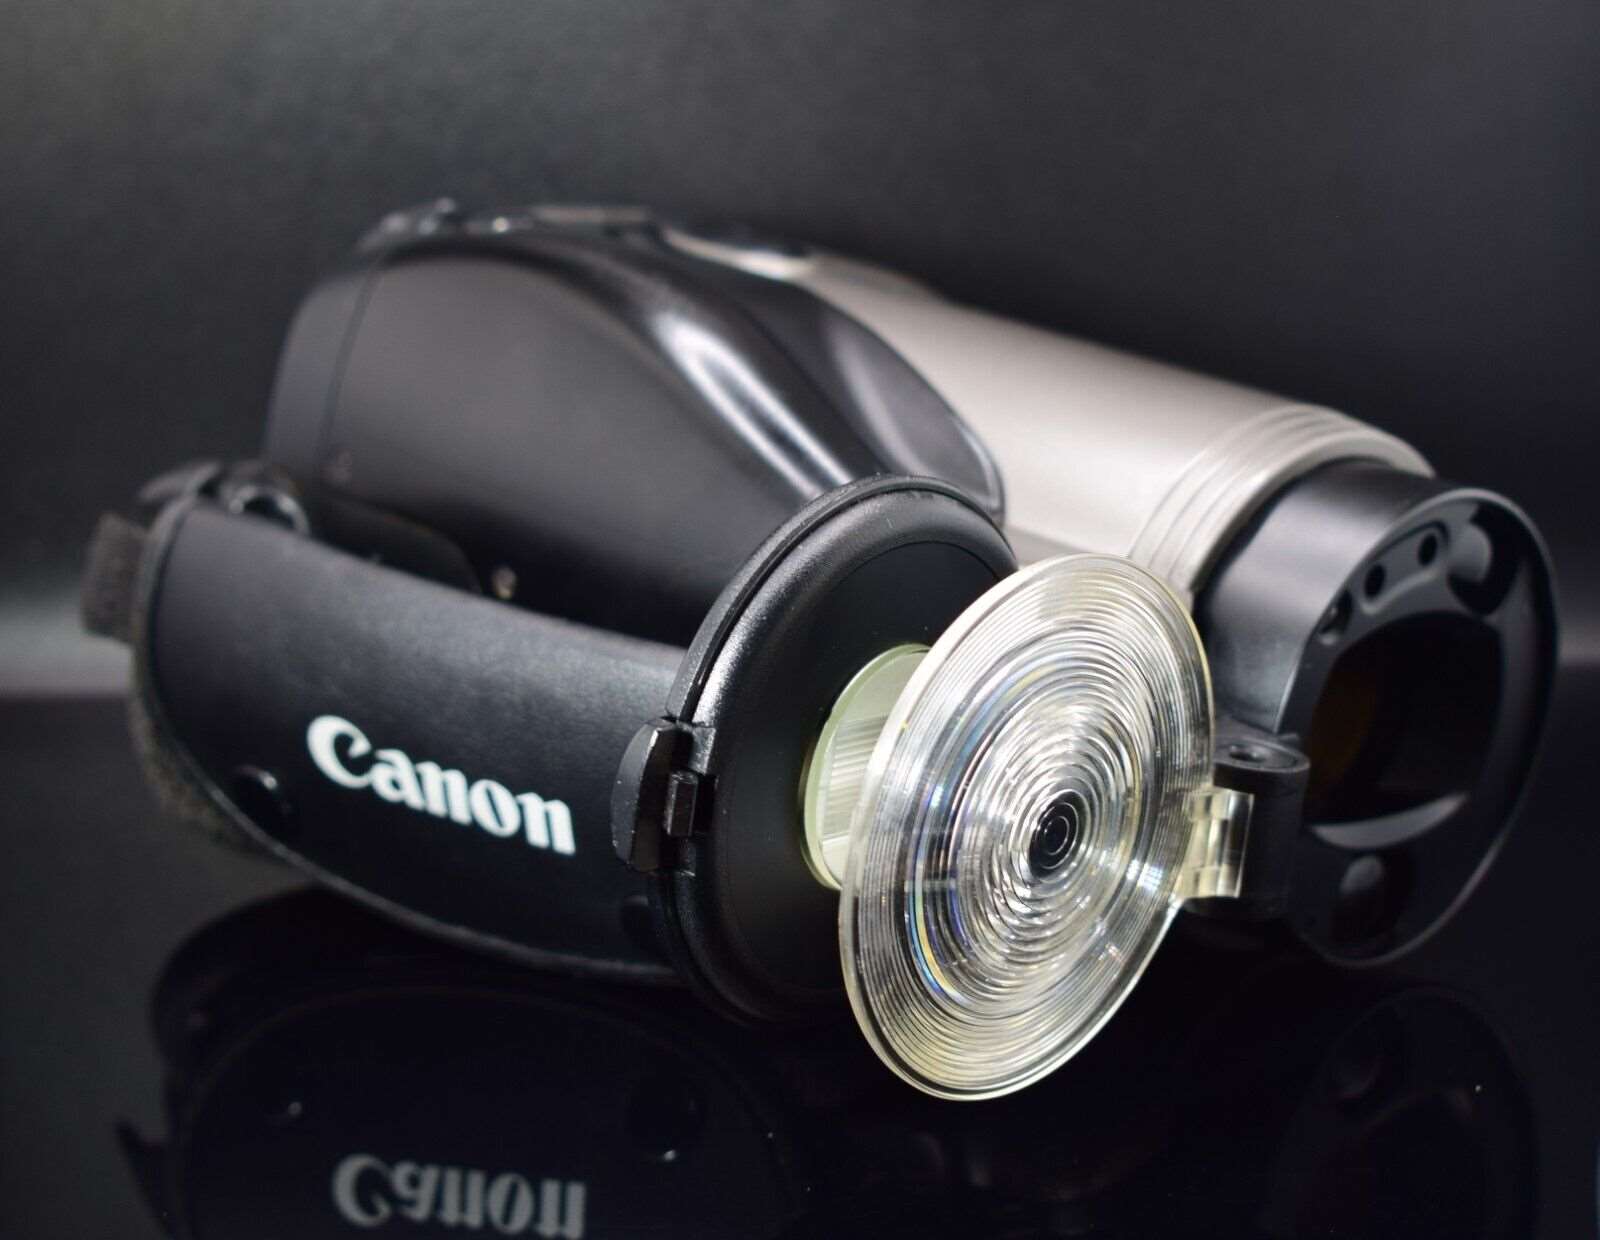 Canon epoca 35mm Film Bridge Camera 35-105mm f2.8-6.6 Zoom Lens RARE Collectible